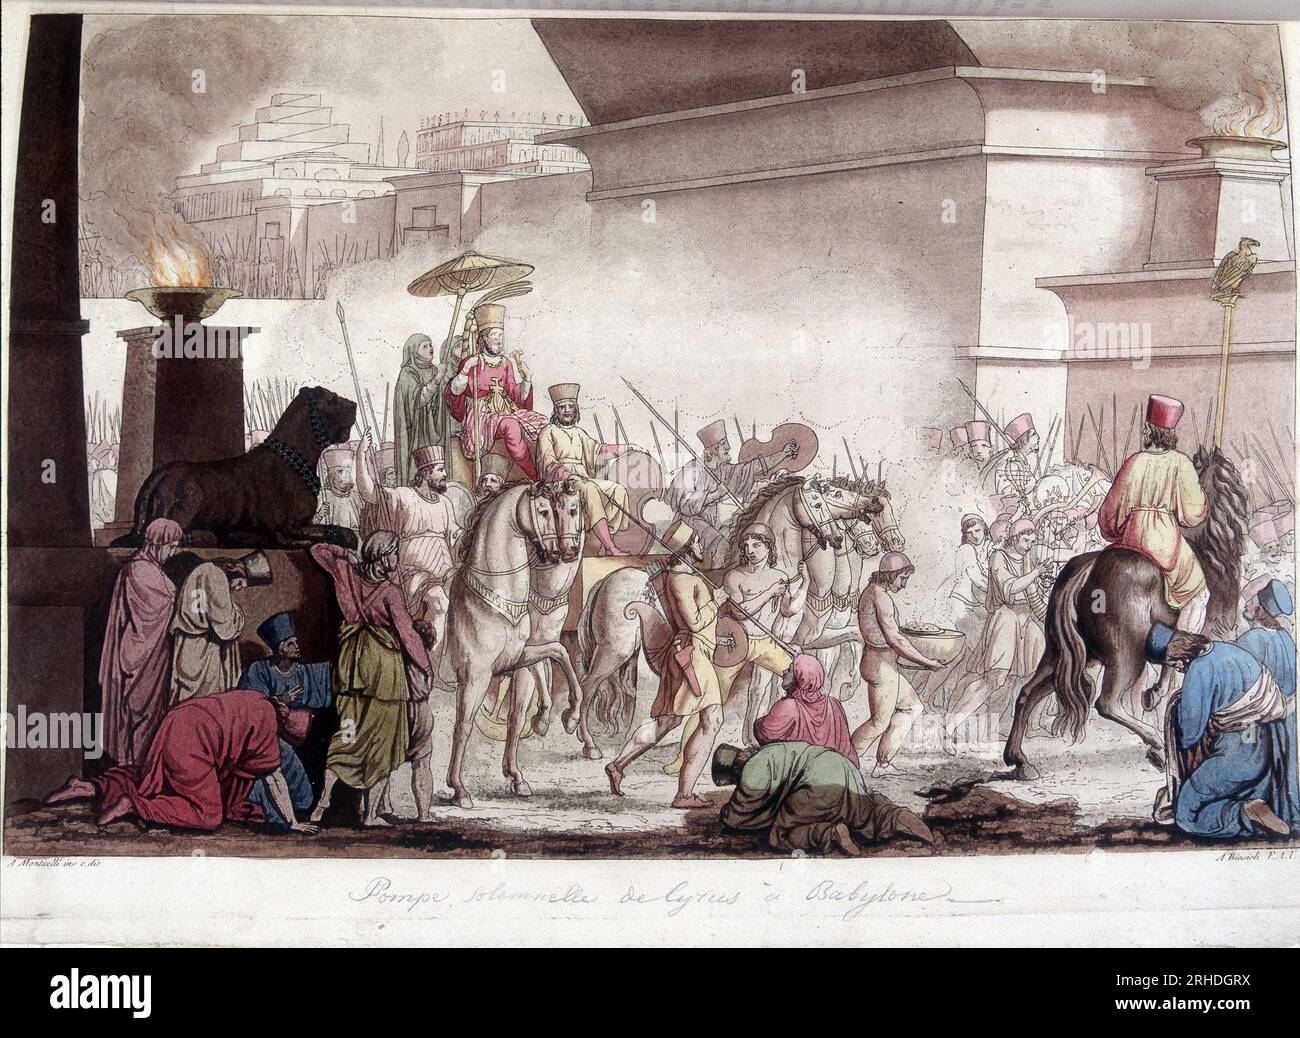 Entree du roi Cyrus II le Grand (580 av. JC - 530 av. JC) en grande pompe dans Babylone - in 'le costume ancien et moderne' par Ferrario, 1819-20 Foto Stock